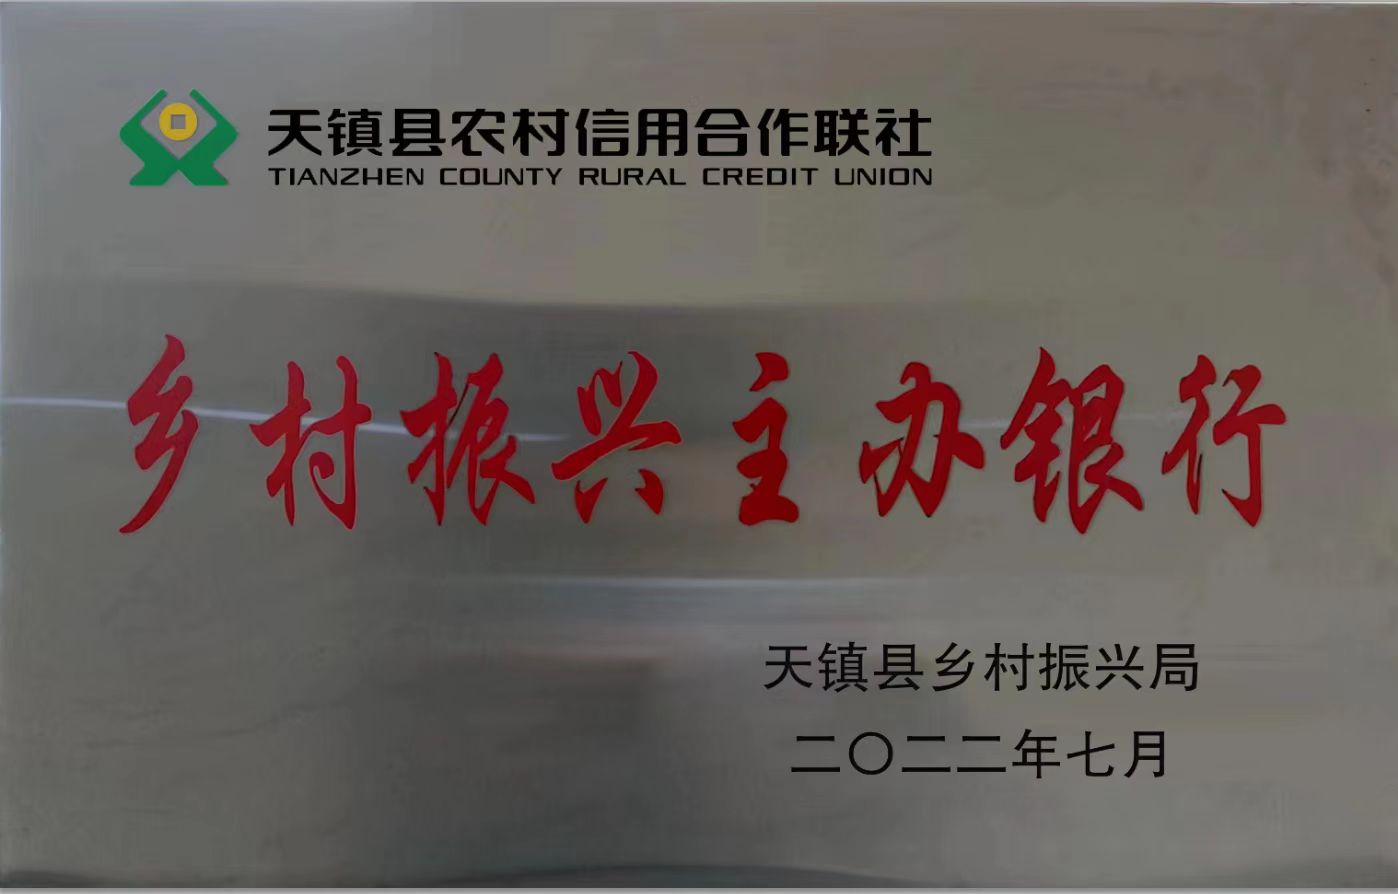 天镇县联社被授予“乡村振兴主办银行” 